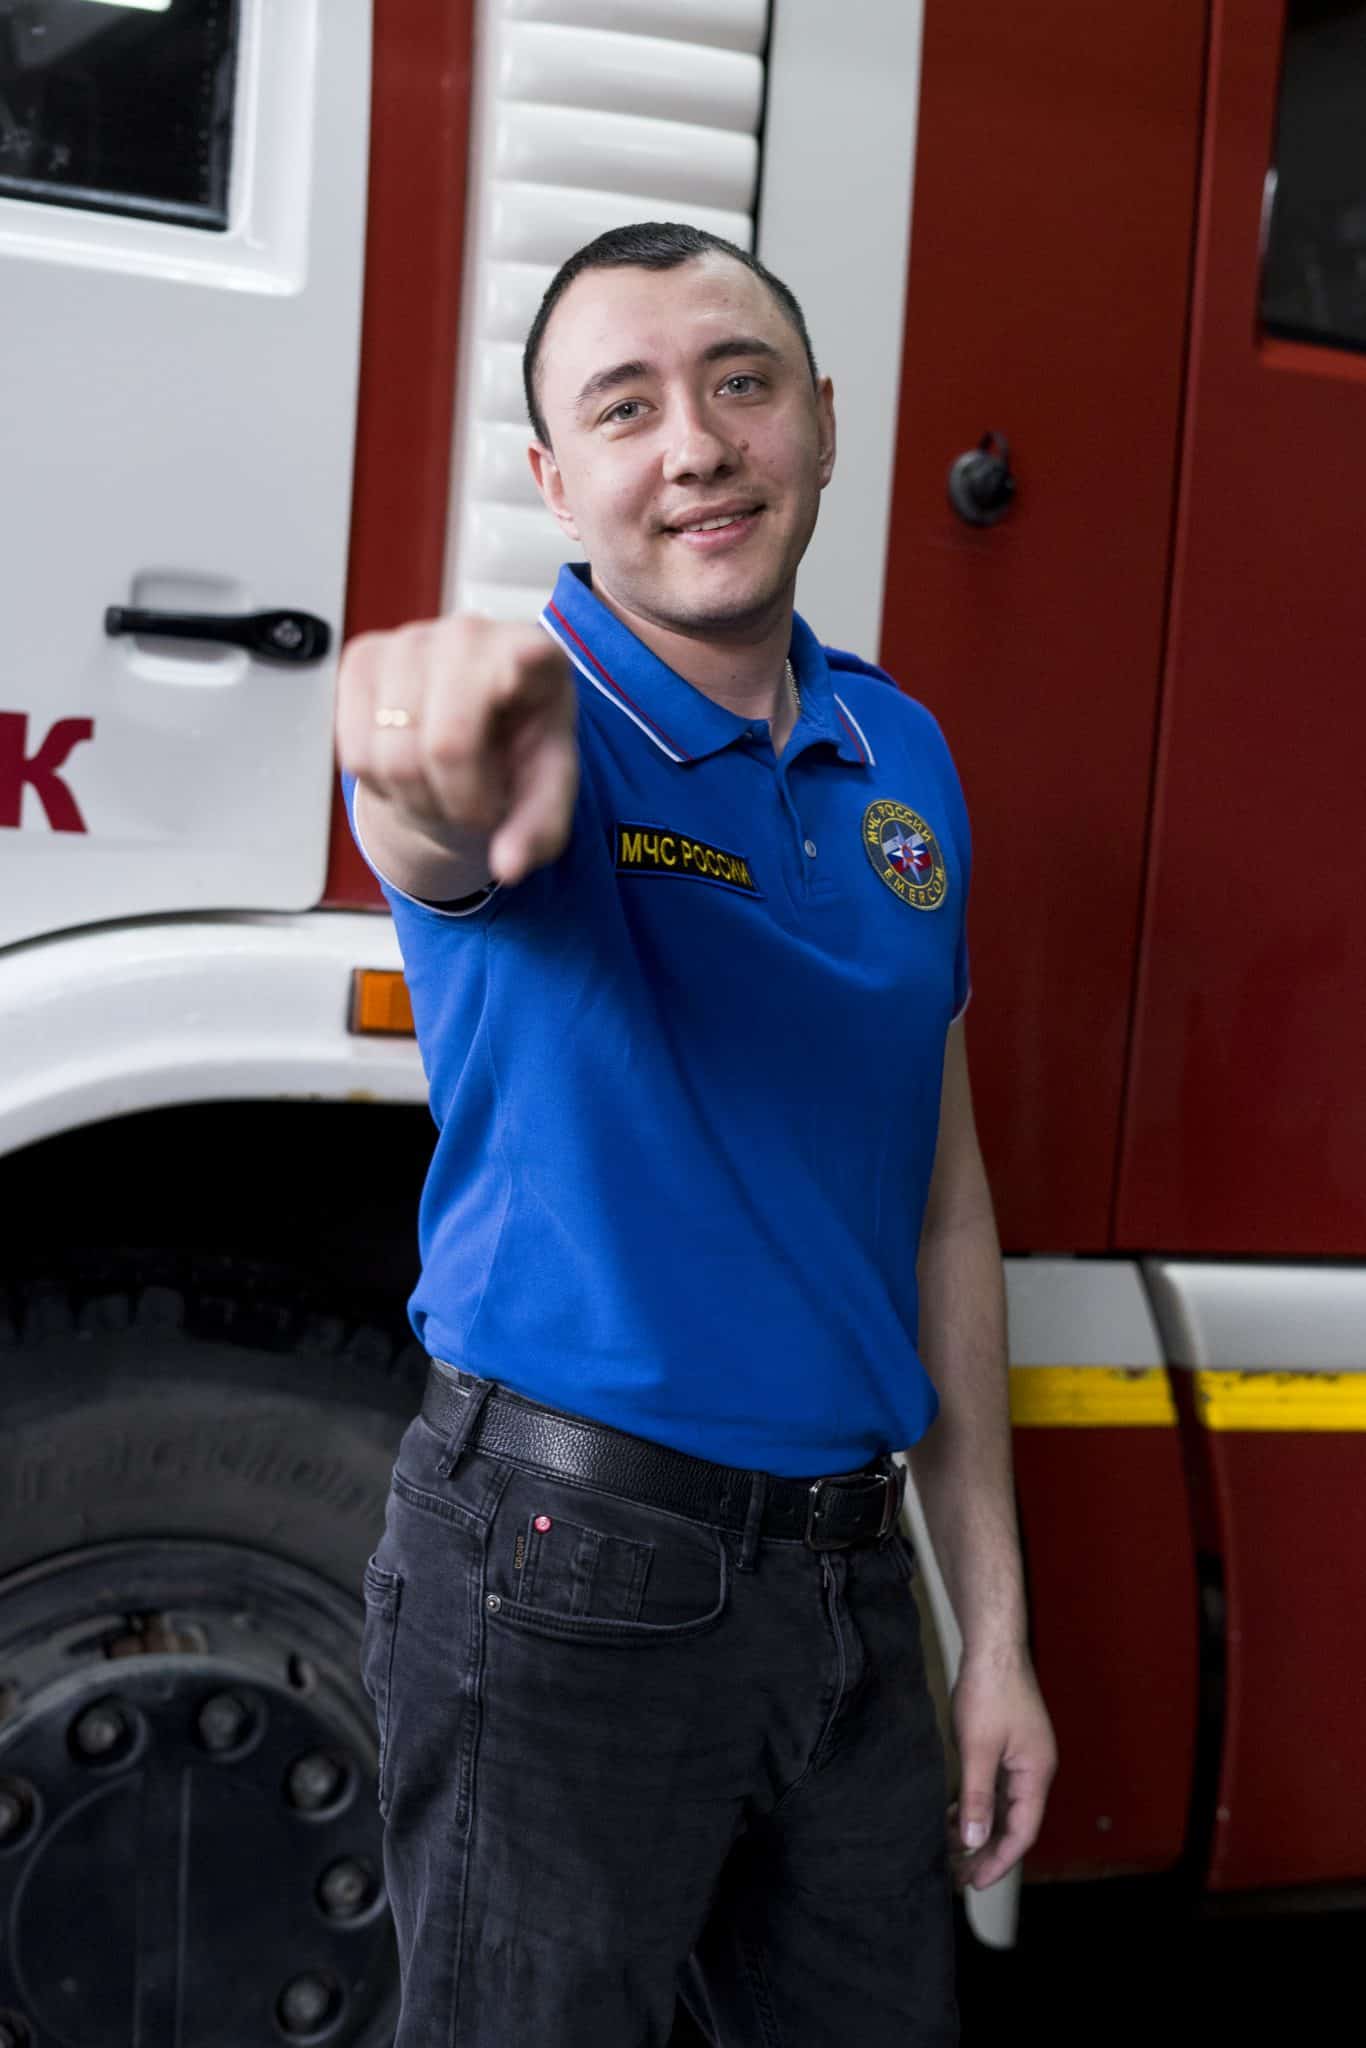 Голосование за самого красивого пожарного в конкурсе "Я - спасатель"